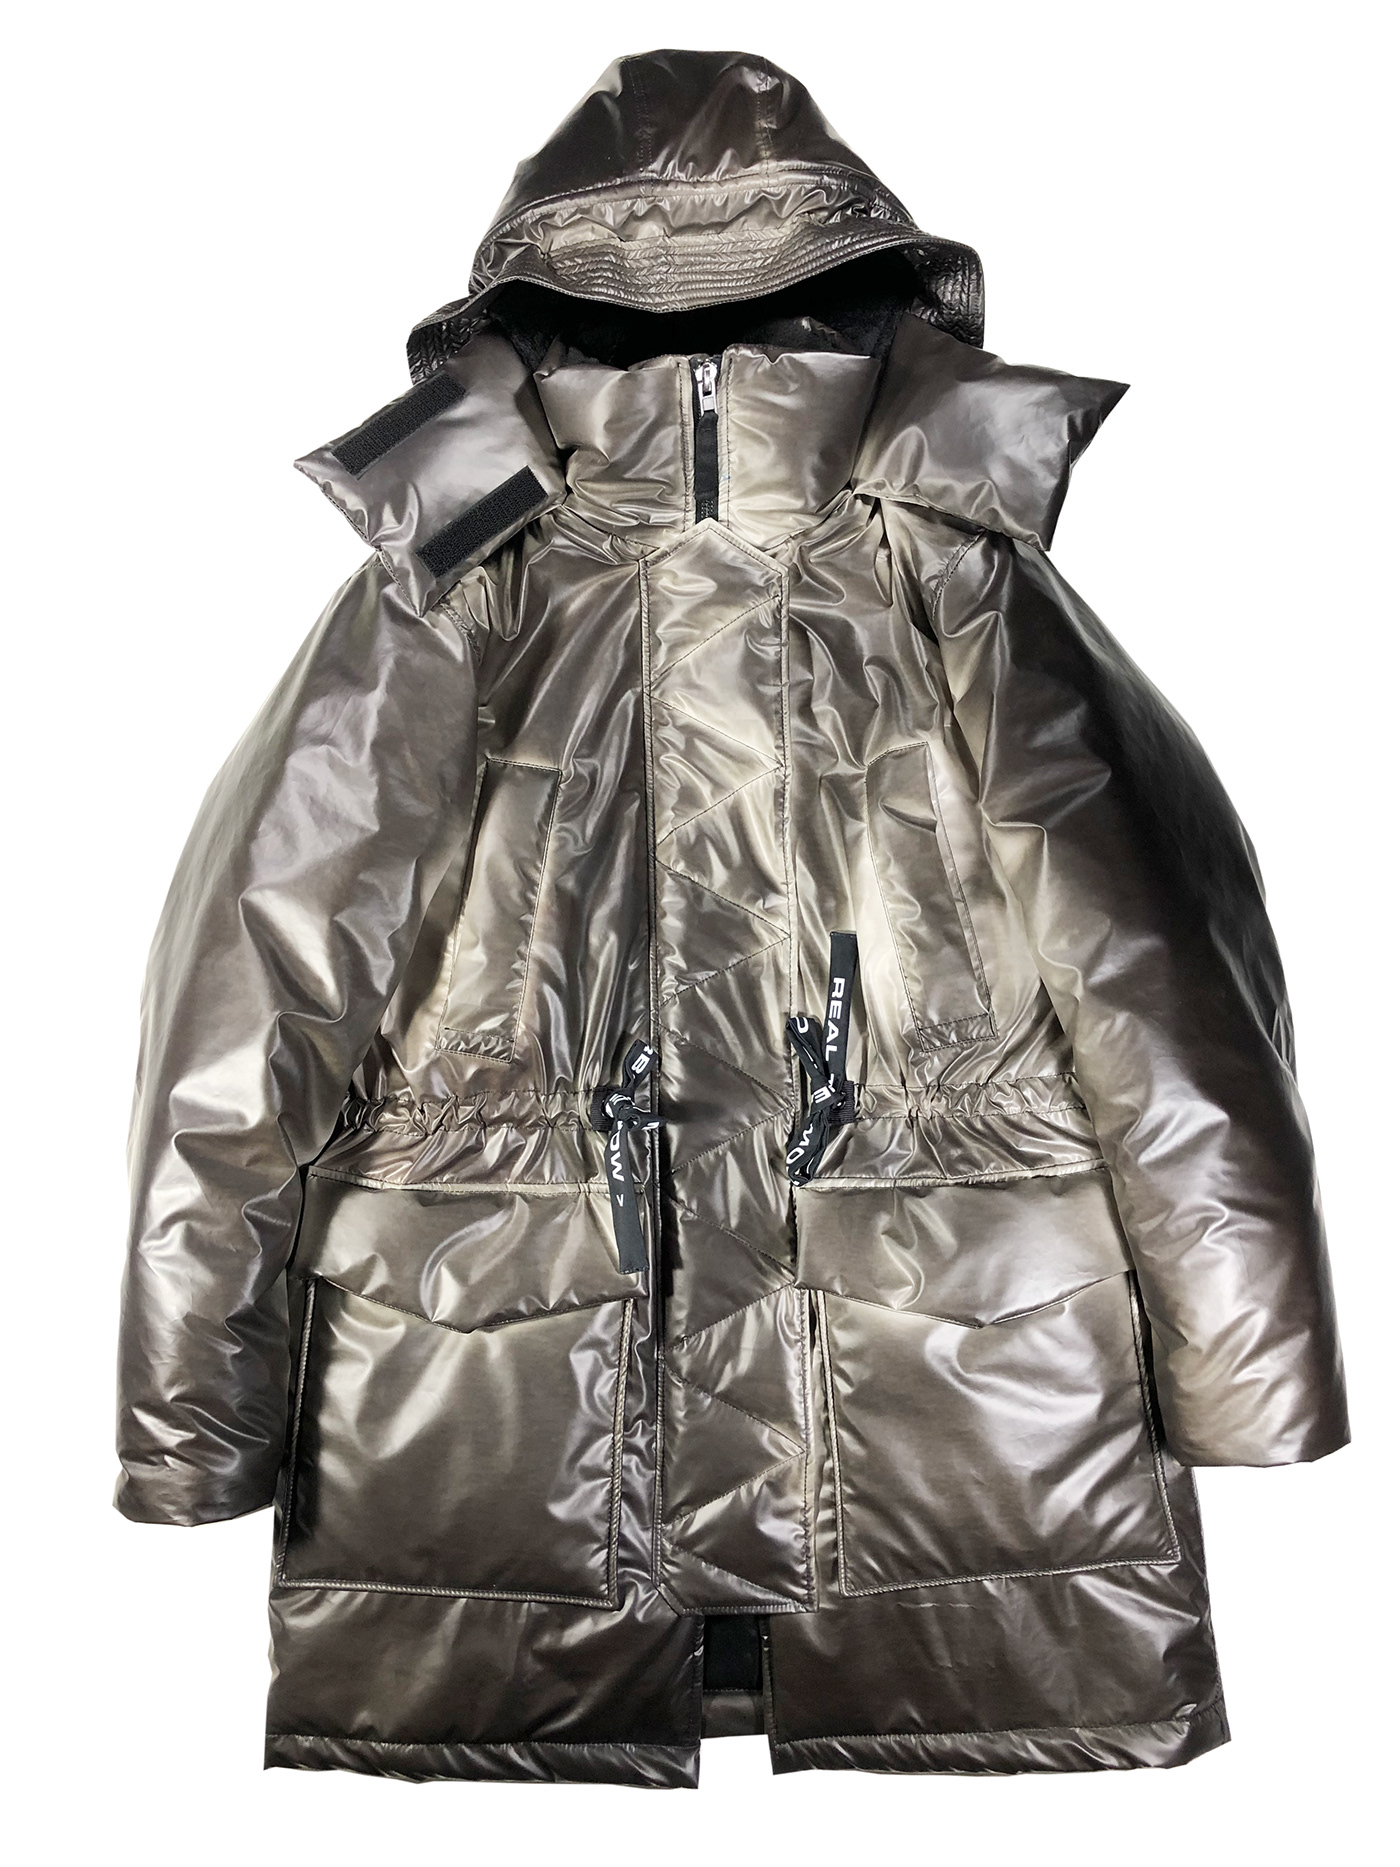 future future design futuristic raincoat Technology TECHWEAR temperature termo thermochrome winter jacket